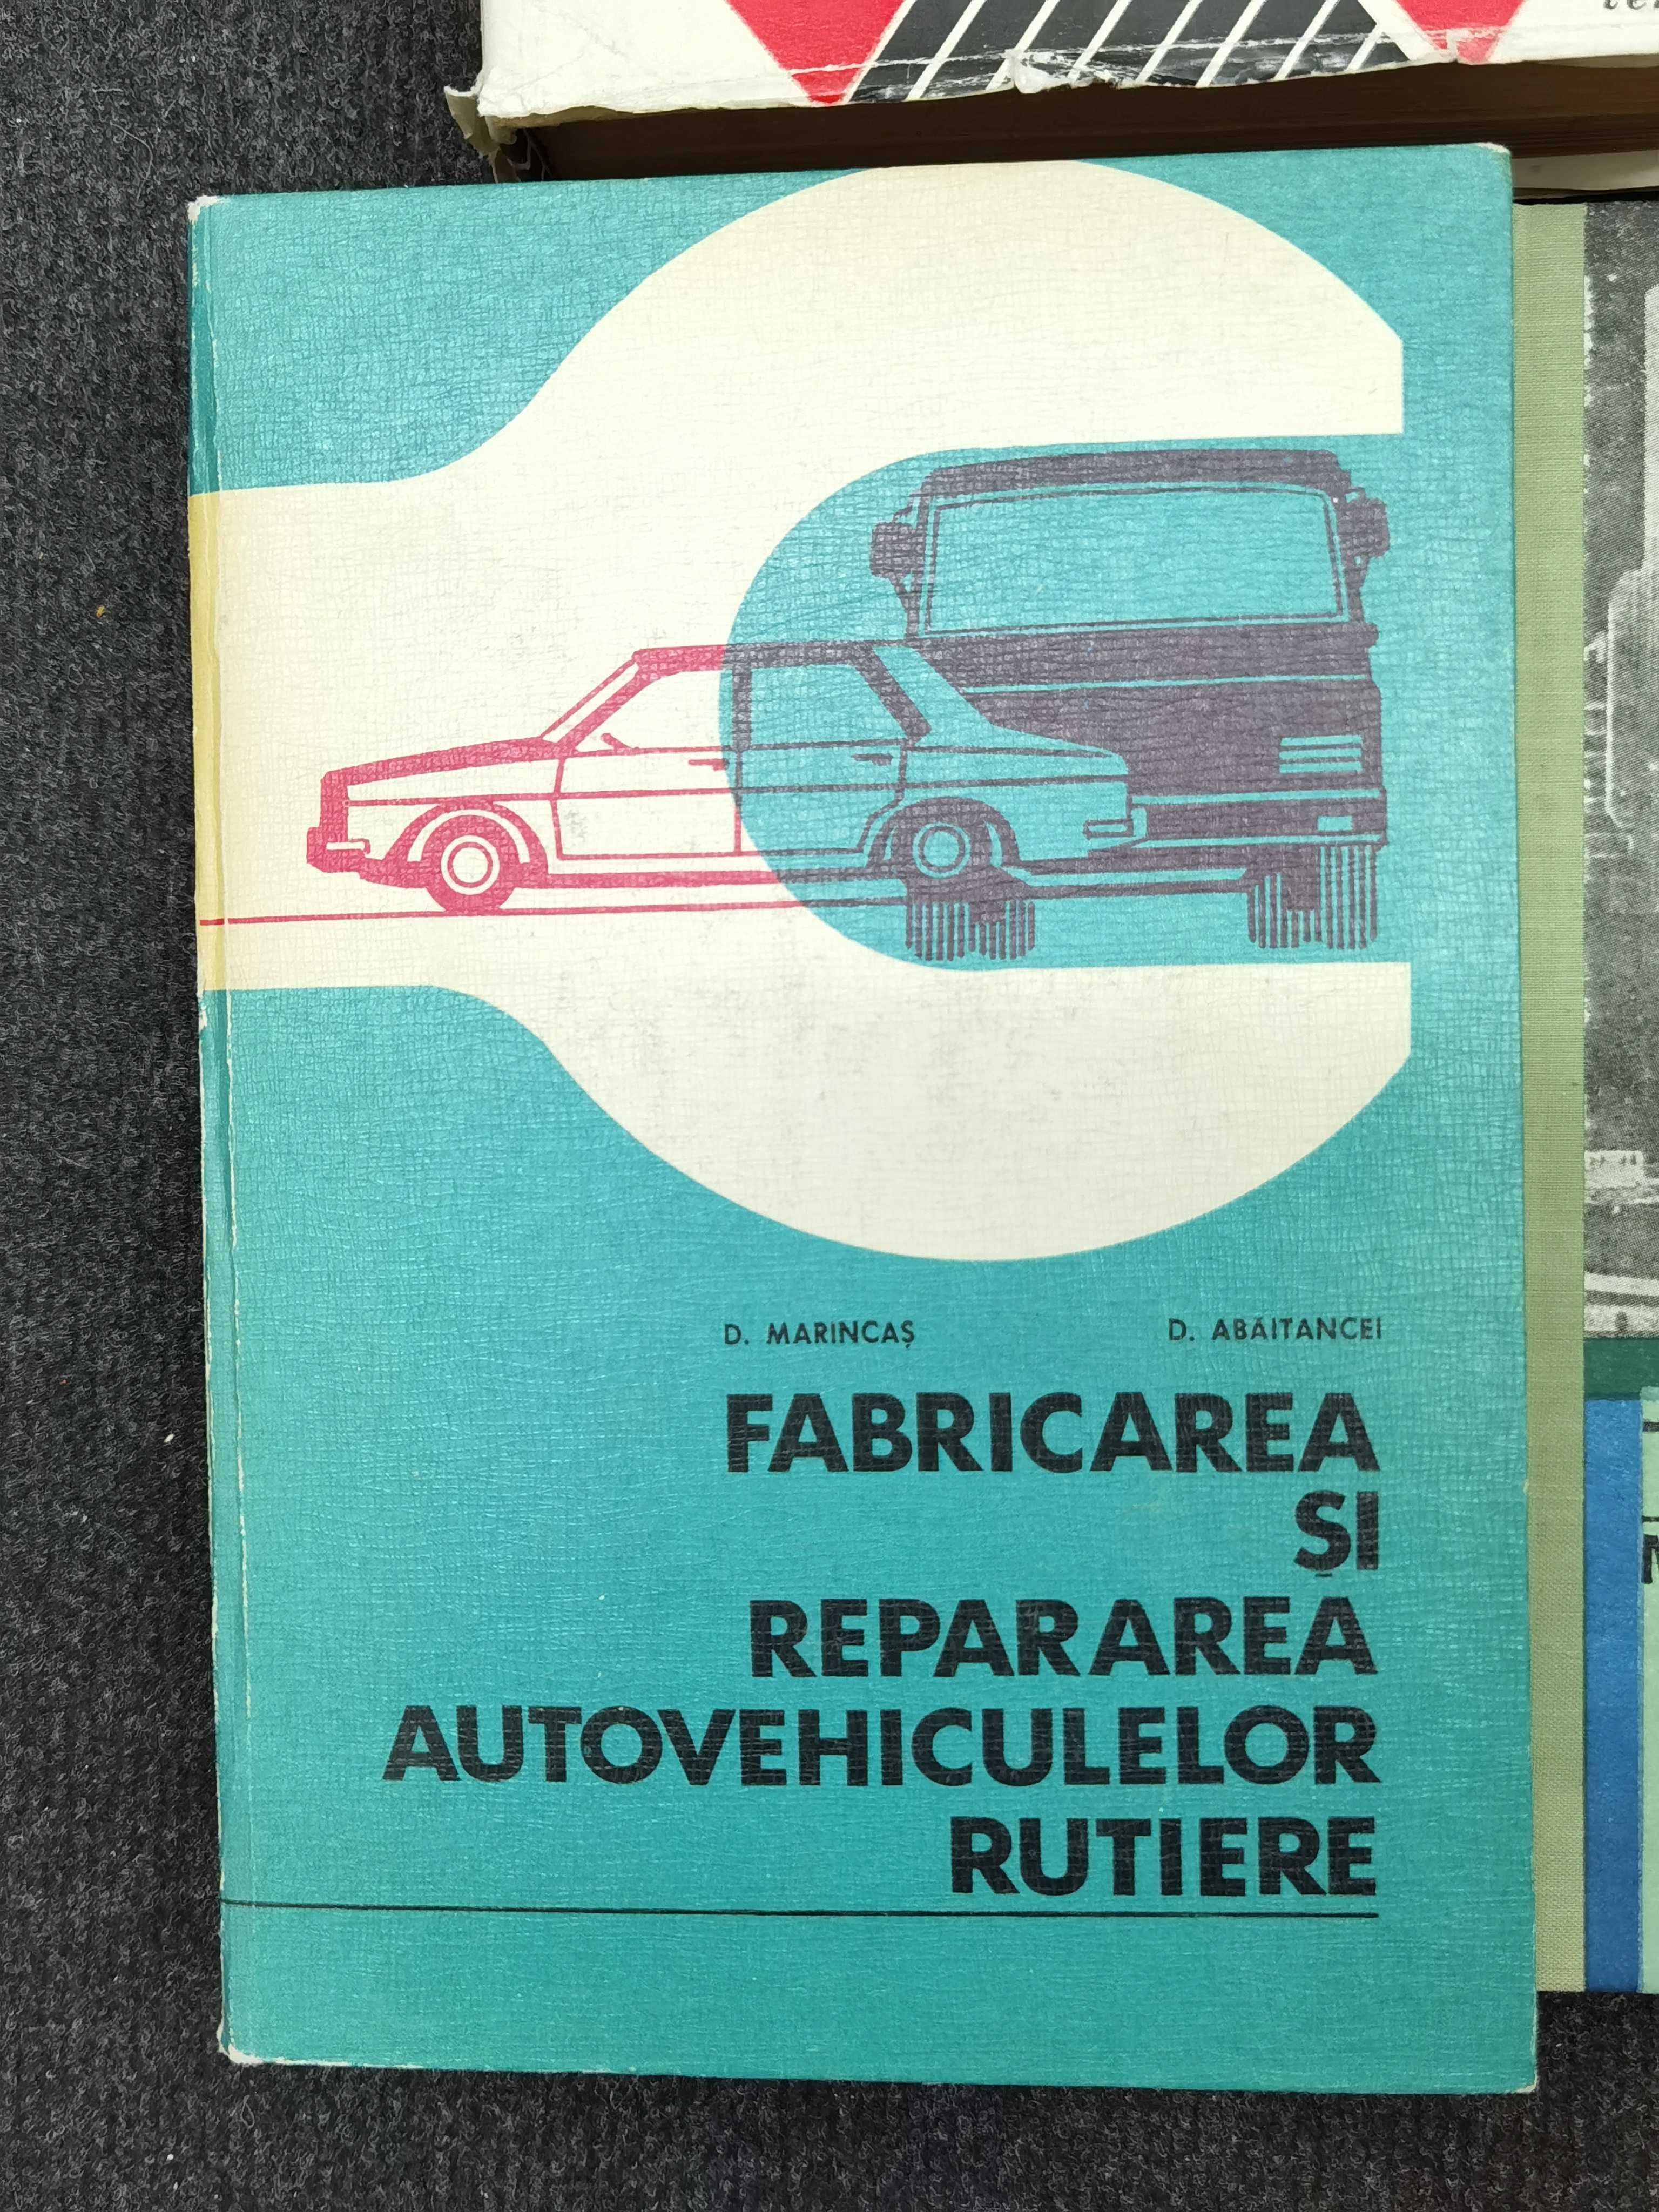 Carti vechi despre autovehicule. Industria constructoare de masini.